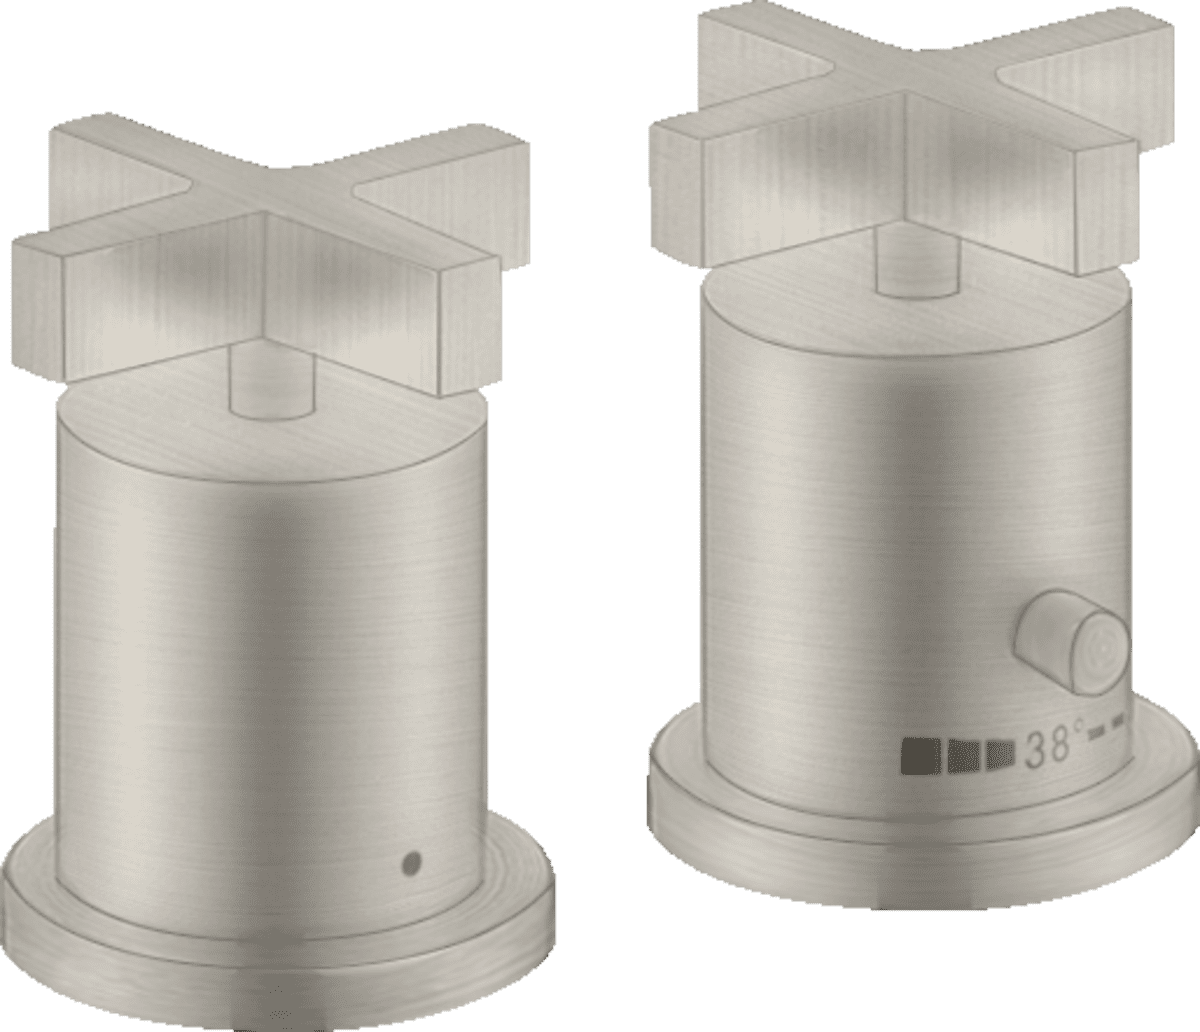 εικόνα του HANSGROHE AXOR Citterio 2-hole rim mounted thermostatic bath mixer with cross handles #39480800 - Stainless Steel Optic